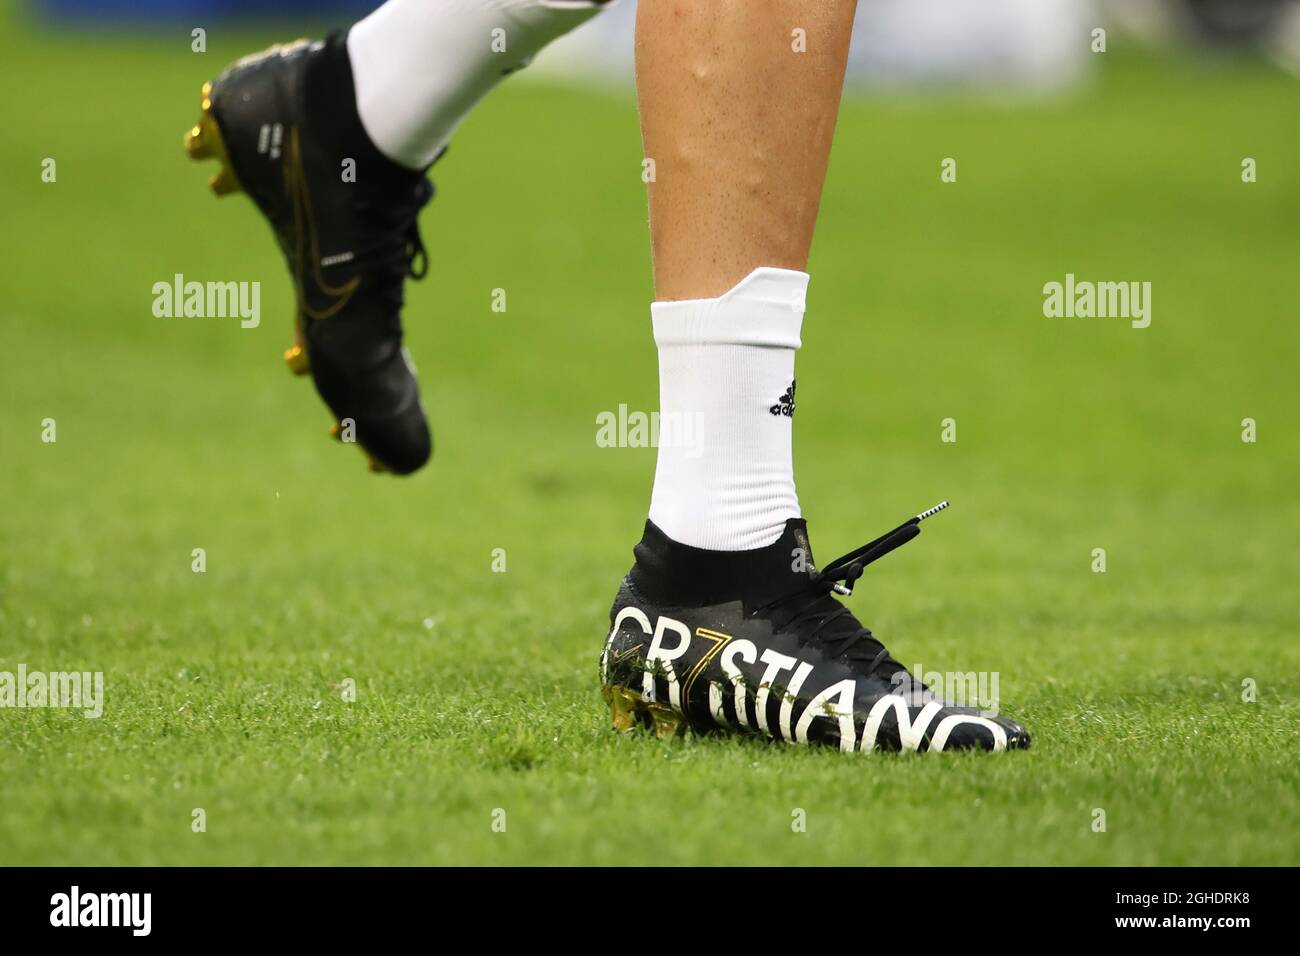 Cristiano Ronaldo des nouvelles chaussures nike de Juventus lors du match  série A à Giuseppe Meazza, Milan. Date de la photo : 27 avril 2019. Le  crédit photo doit être lu :